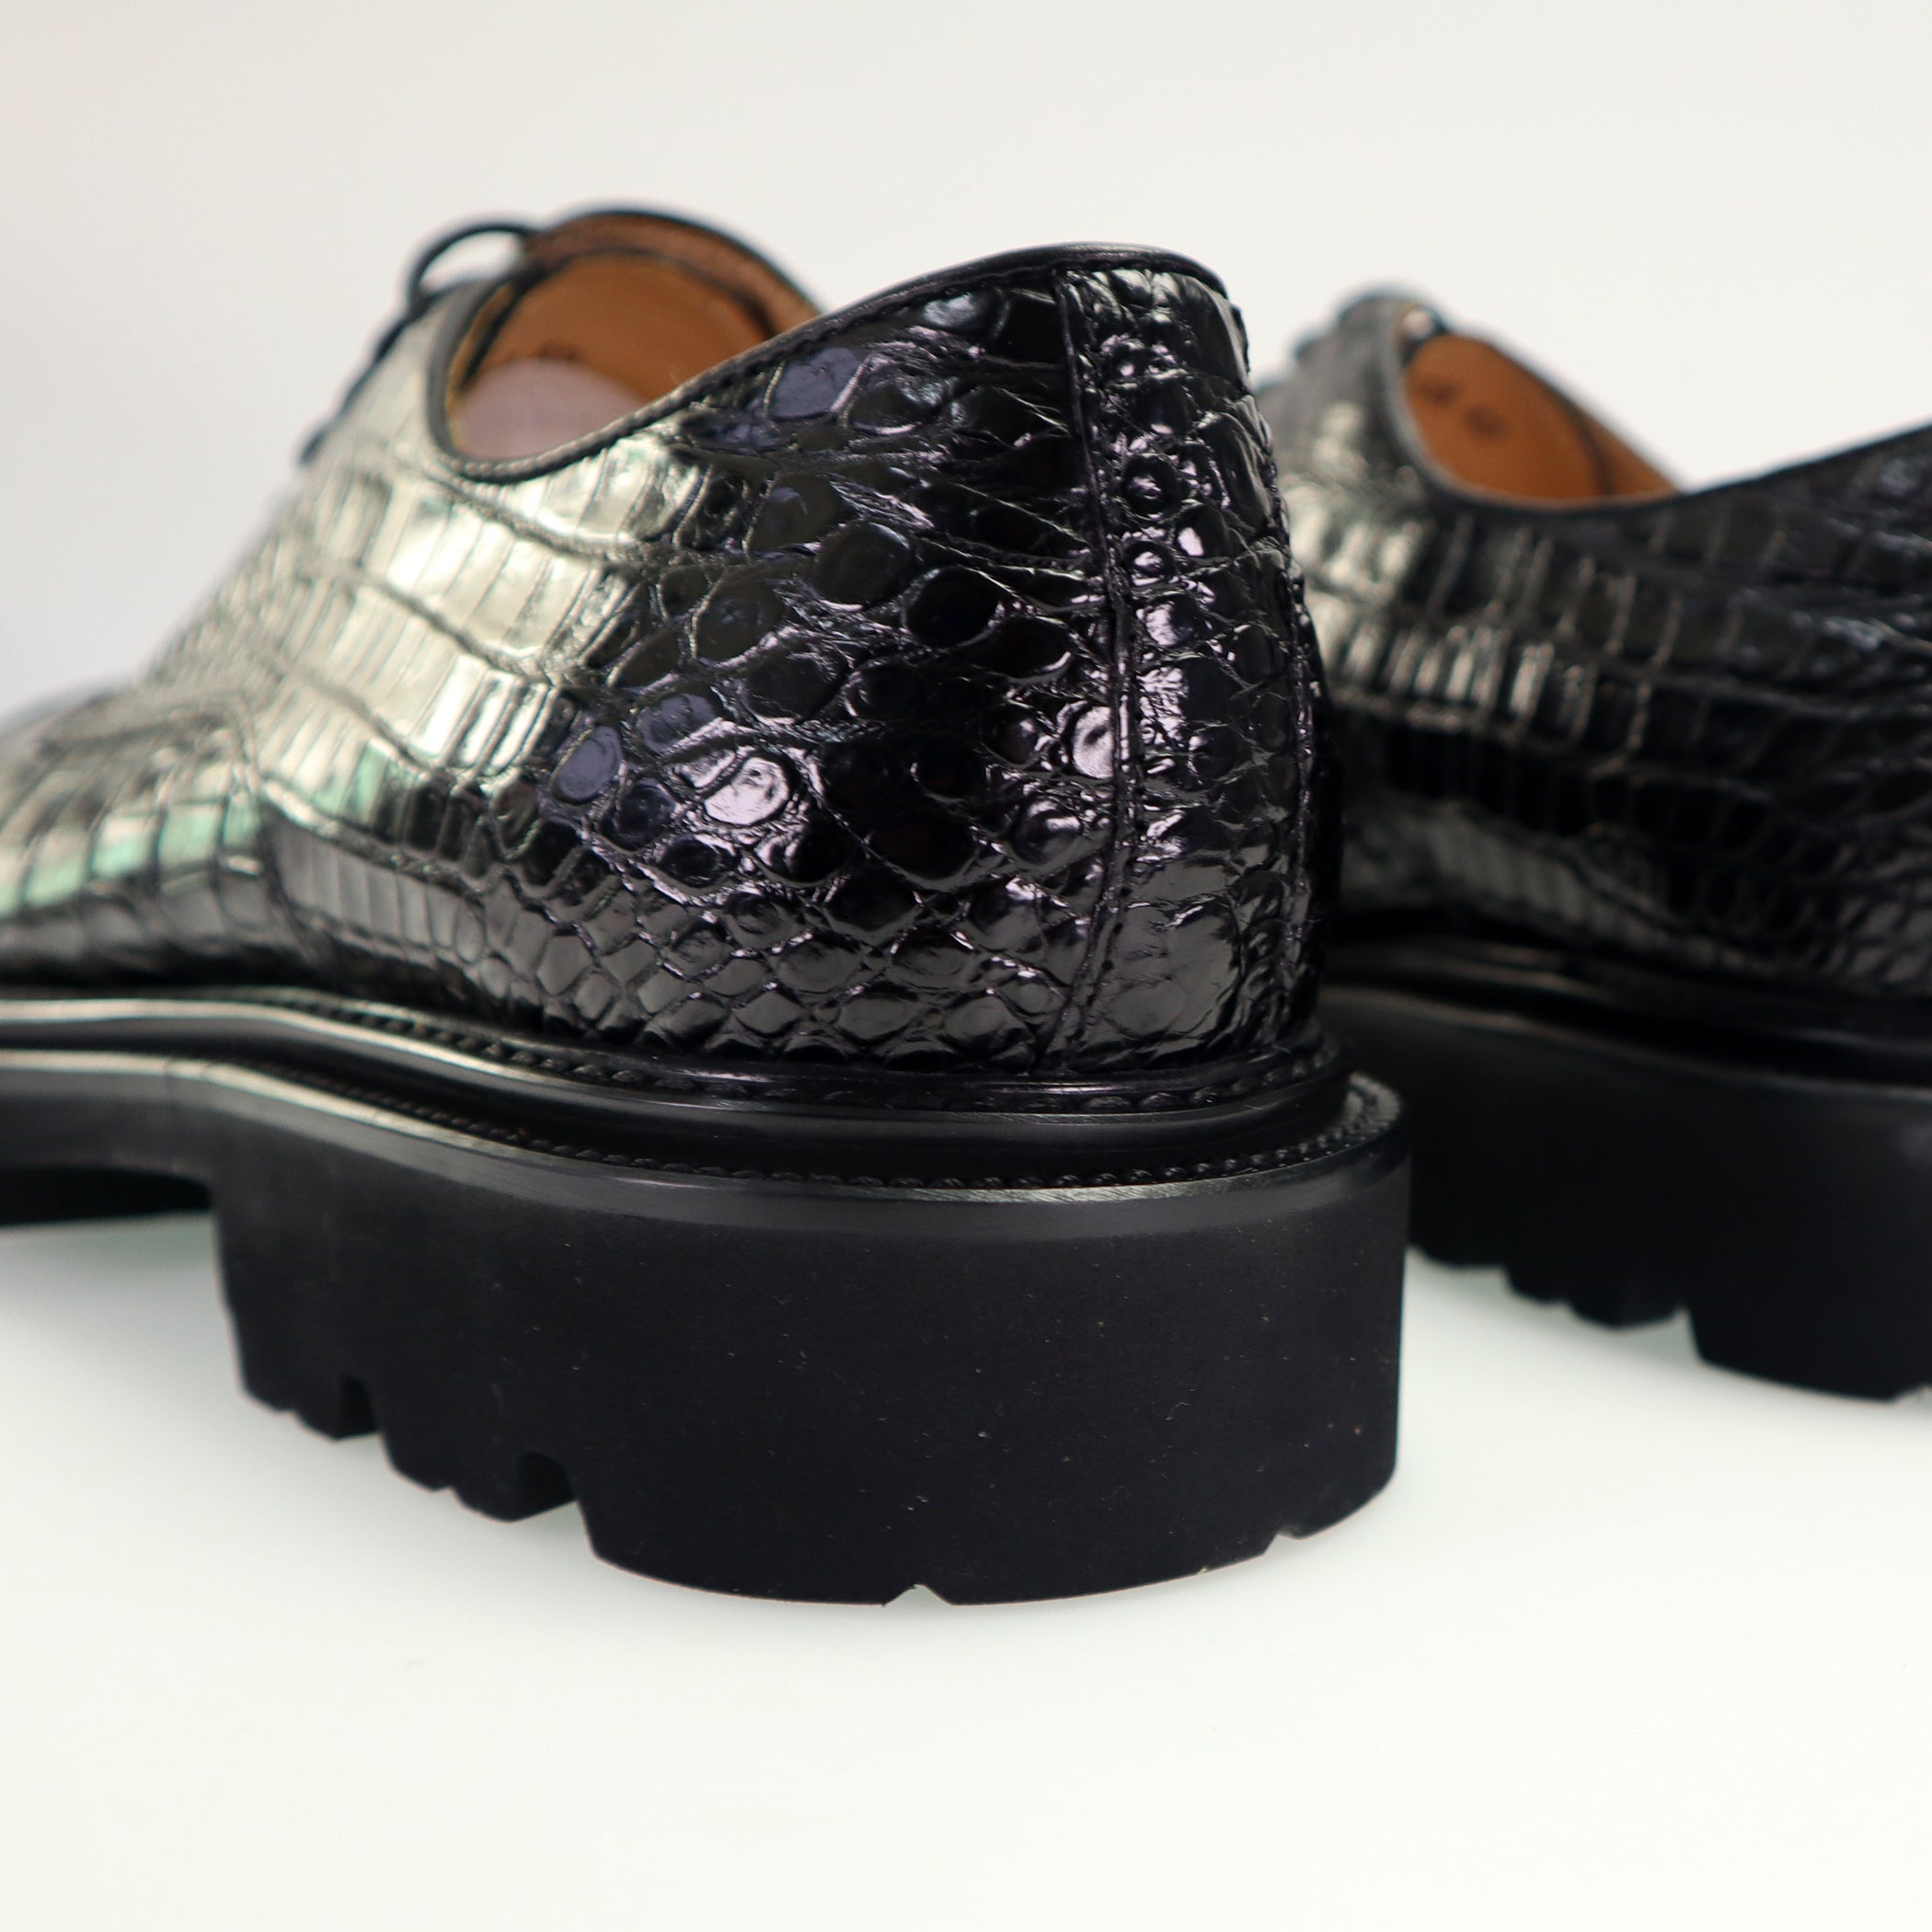 Men's Shoes Genuine Alligator Leather Dress Shoes Lace up Cap-Toe Brogue Shoes